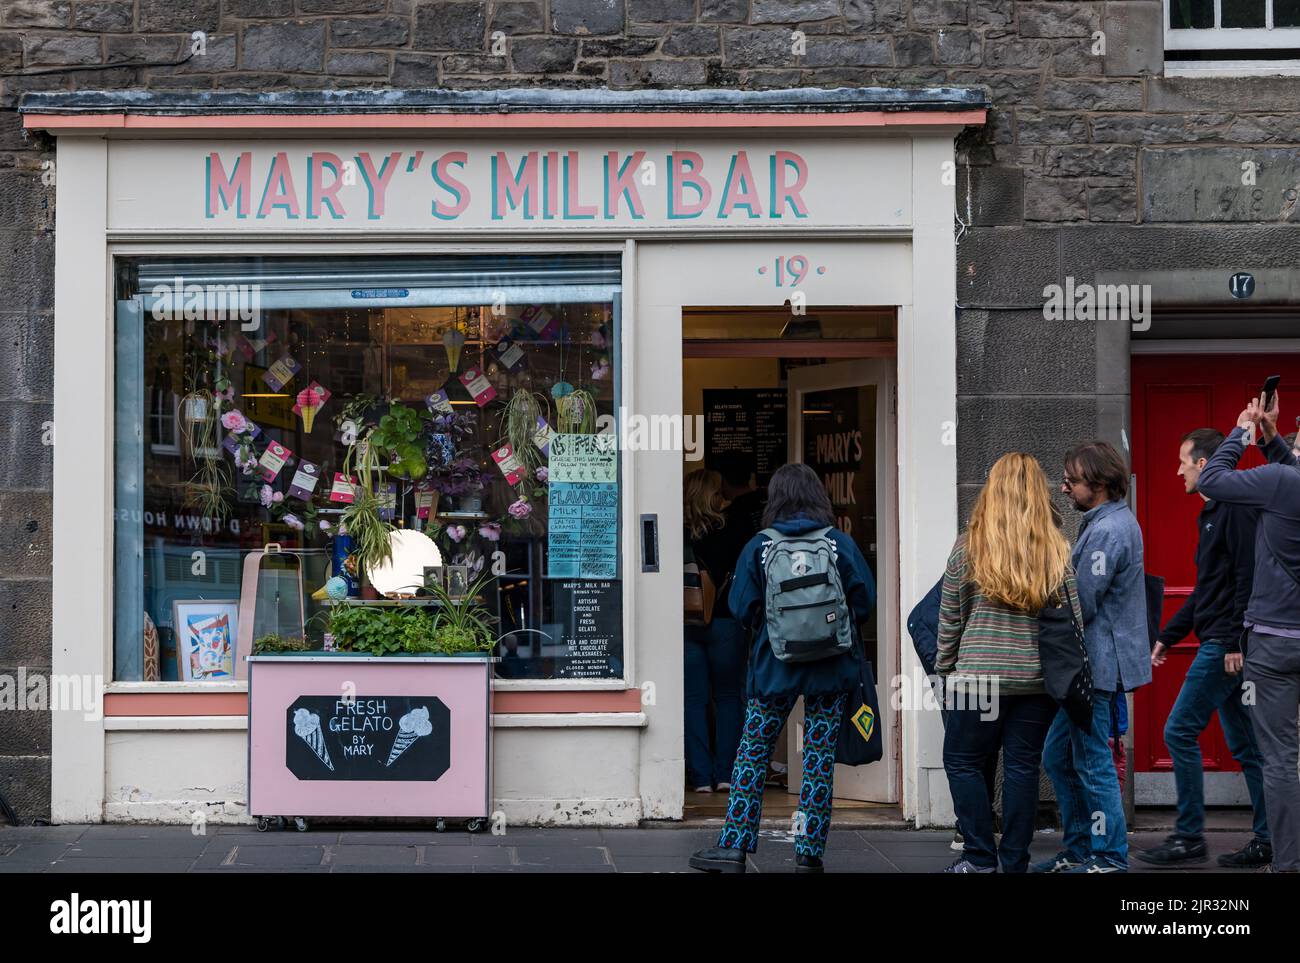 Menschen, die in der Schlange stehen und auf Eis warten, Mary's Milk Bar, Eisdiele zum Mitnehmen, Grassmarket, Edinburgh, Schottland, Großbritannien Stockfoto